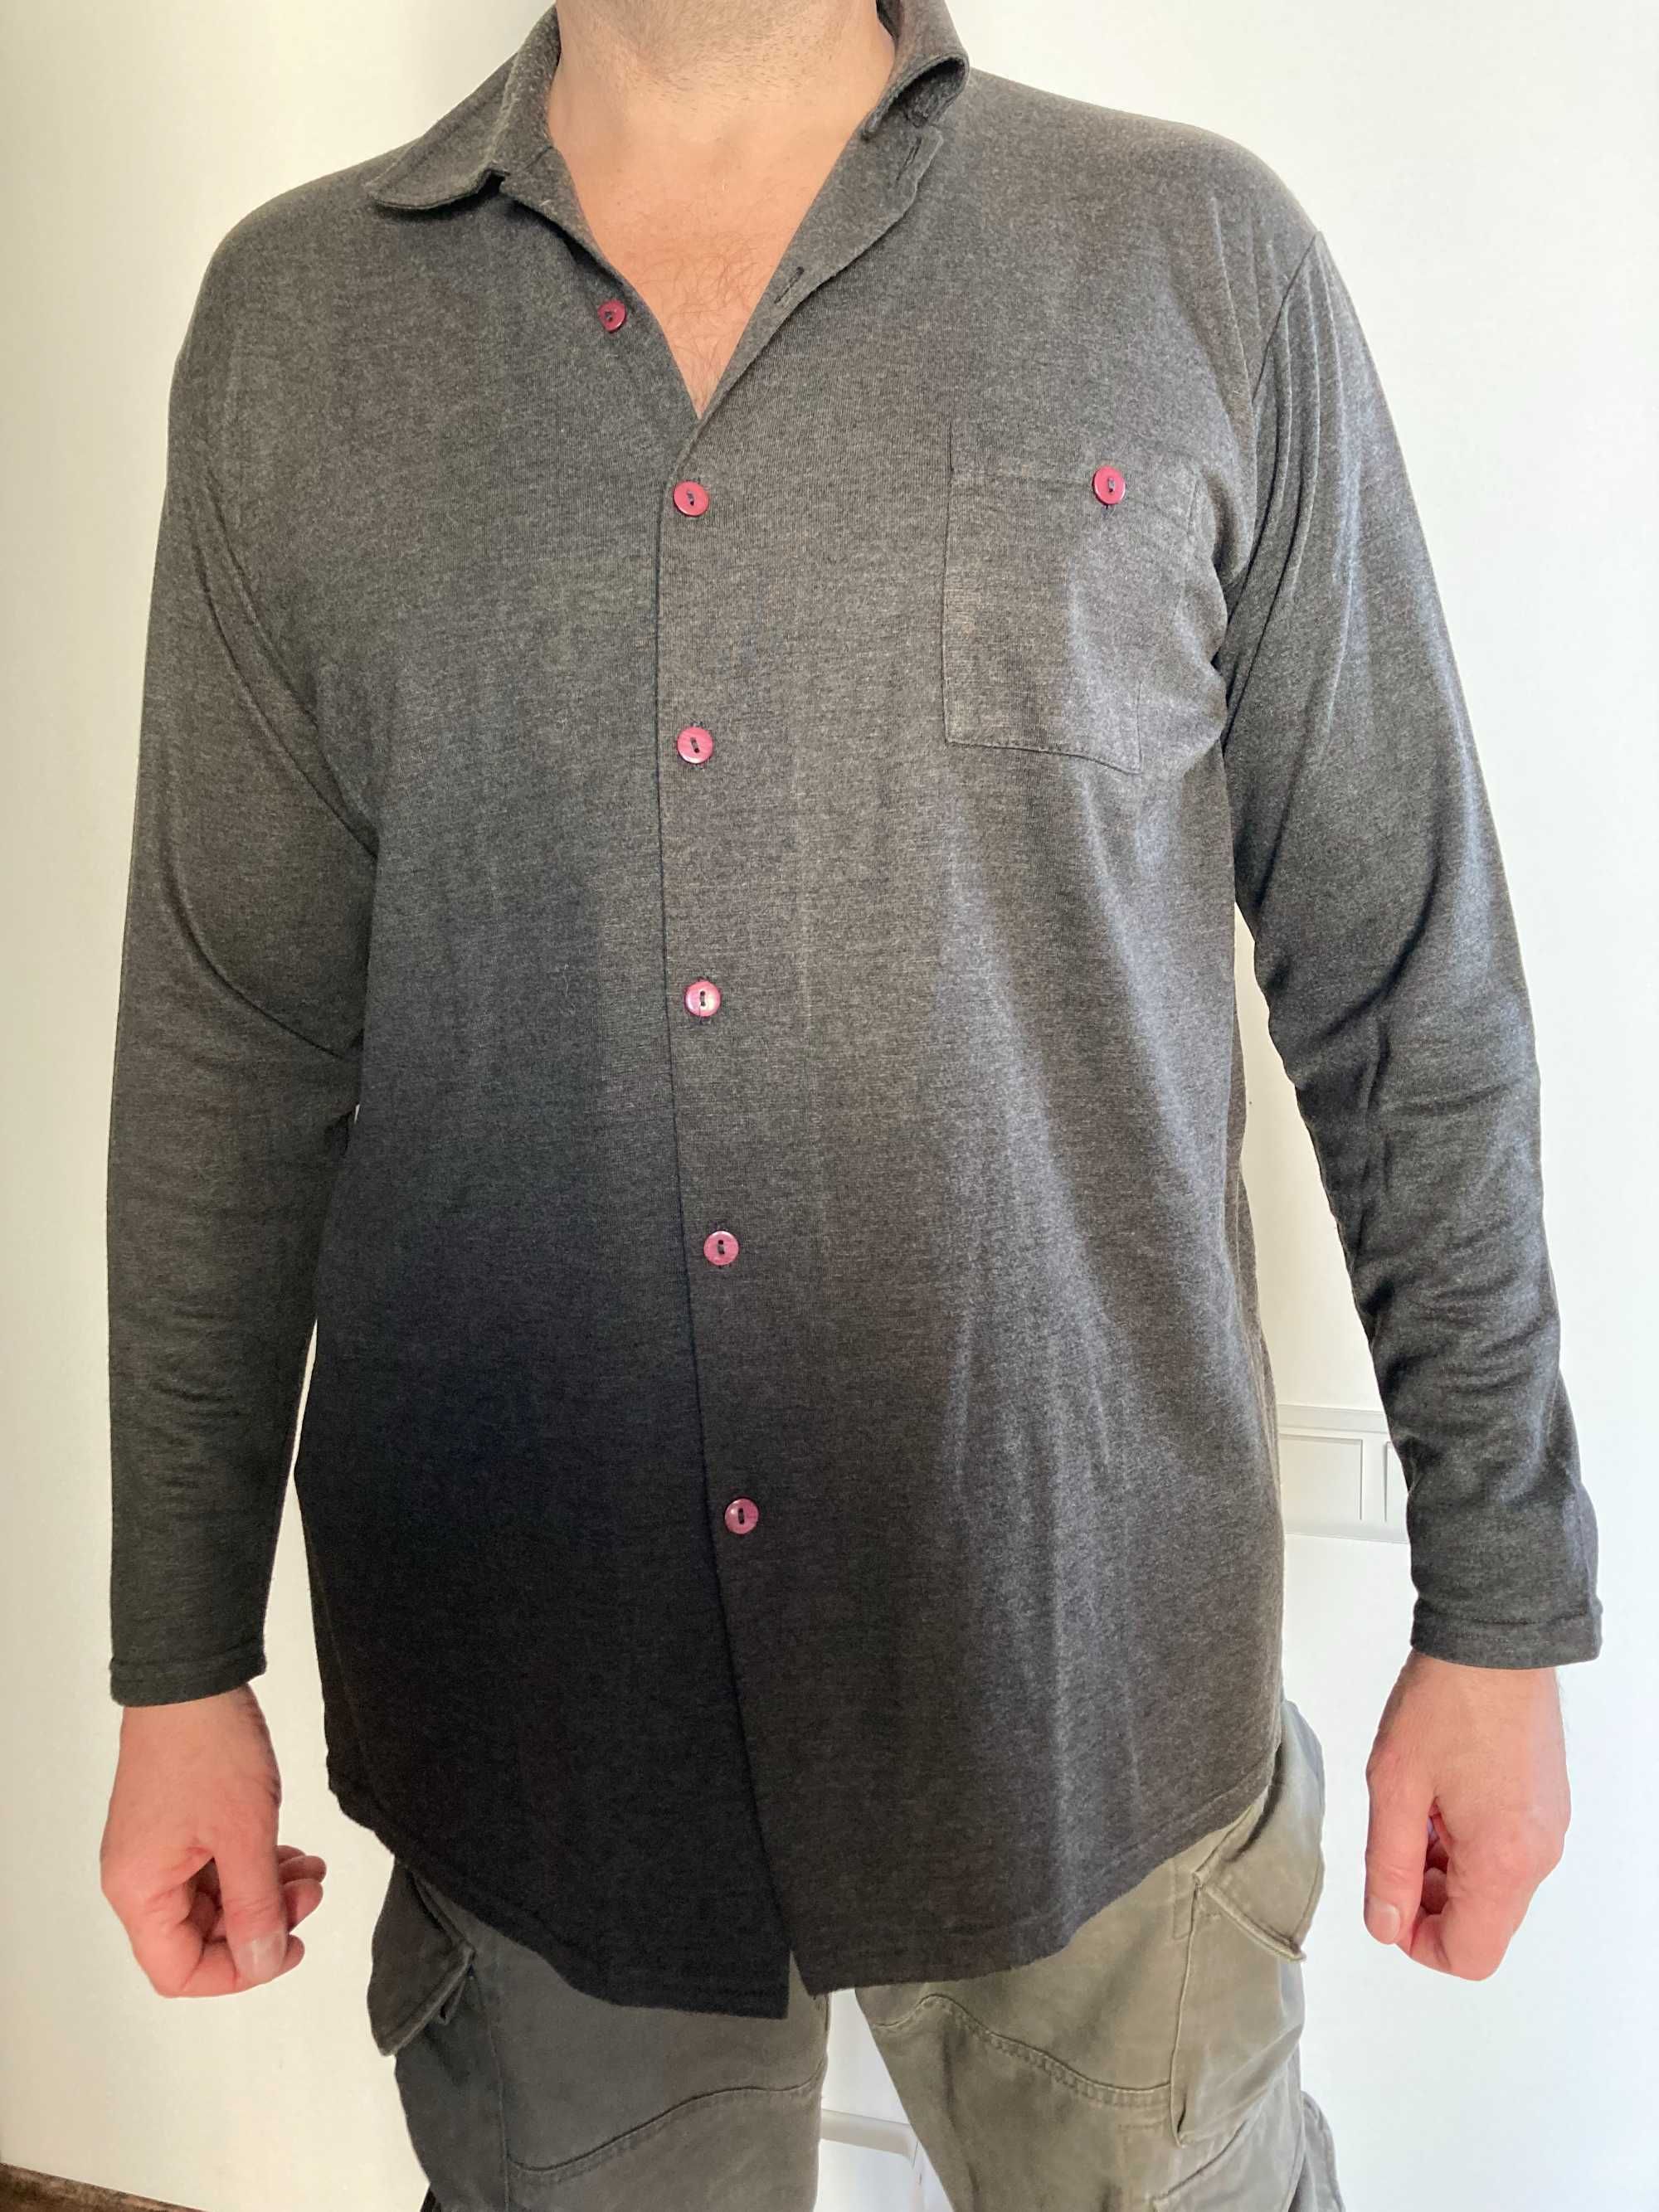 Кофта, реглан, или рубашка из вискозы серая большая XXXL.